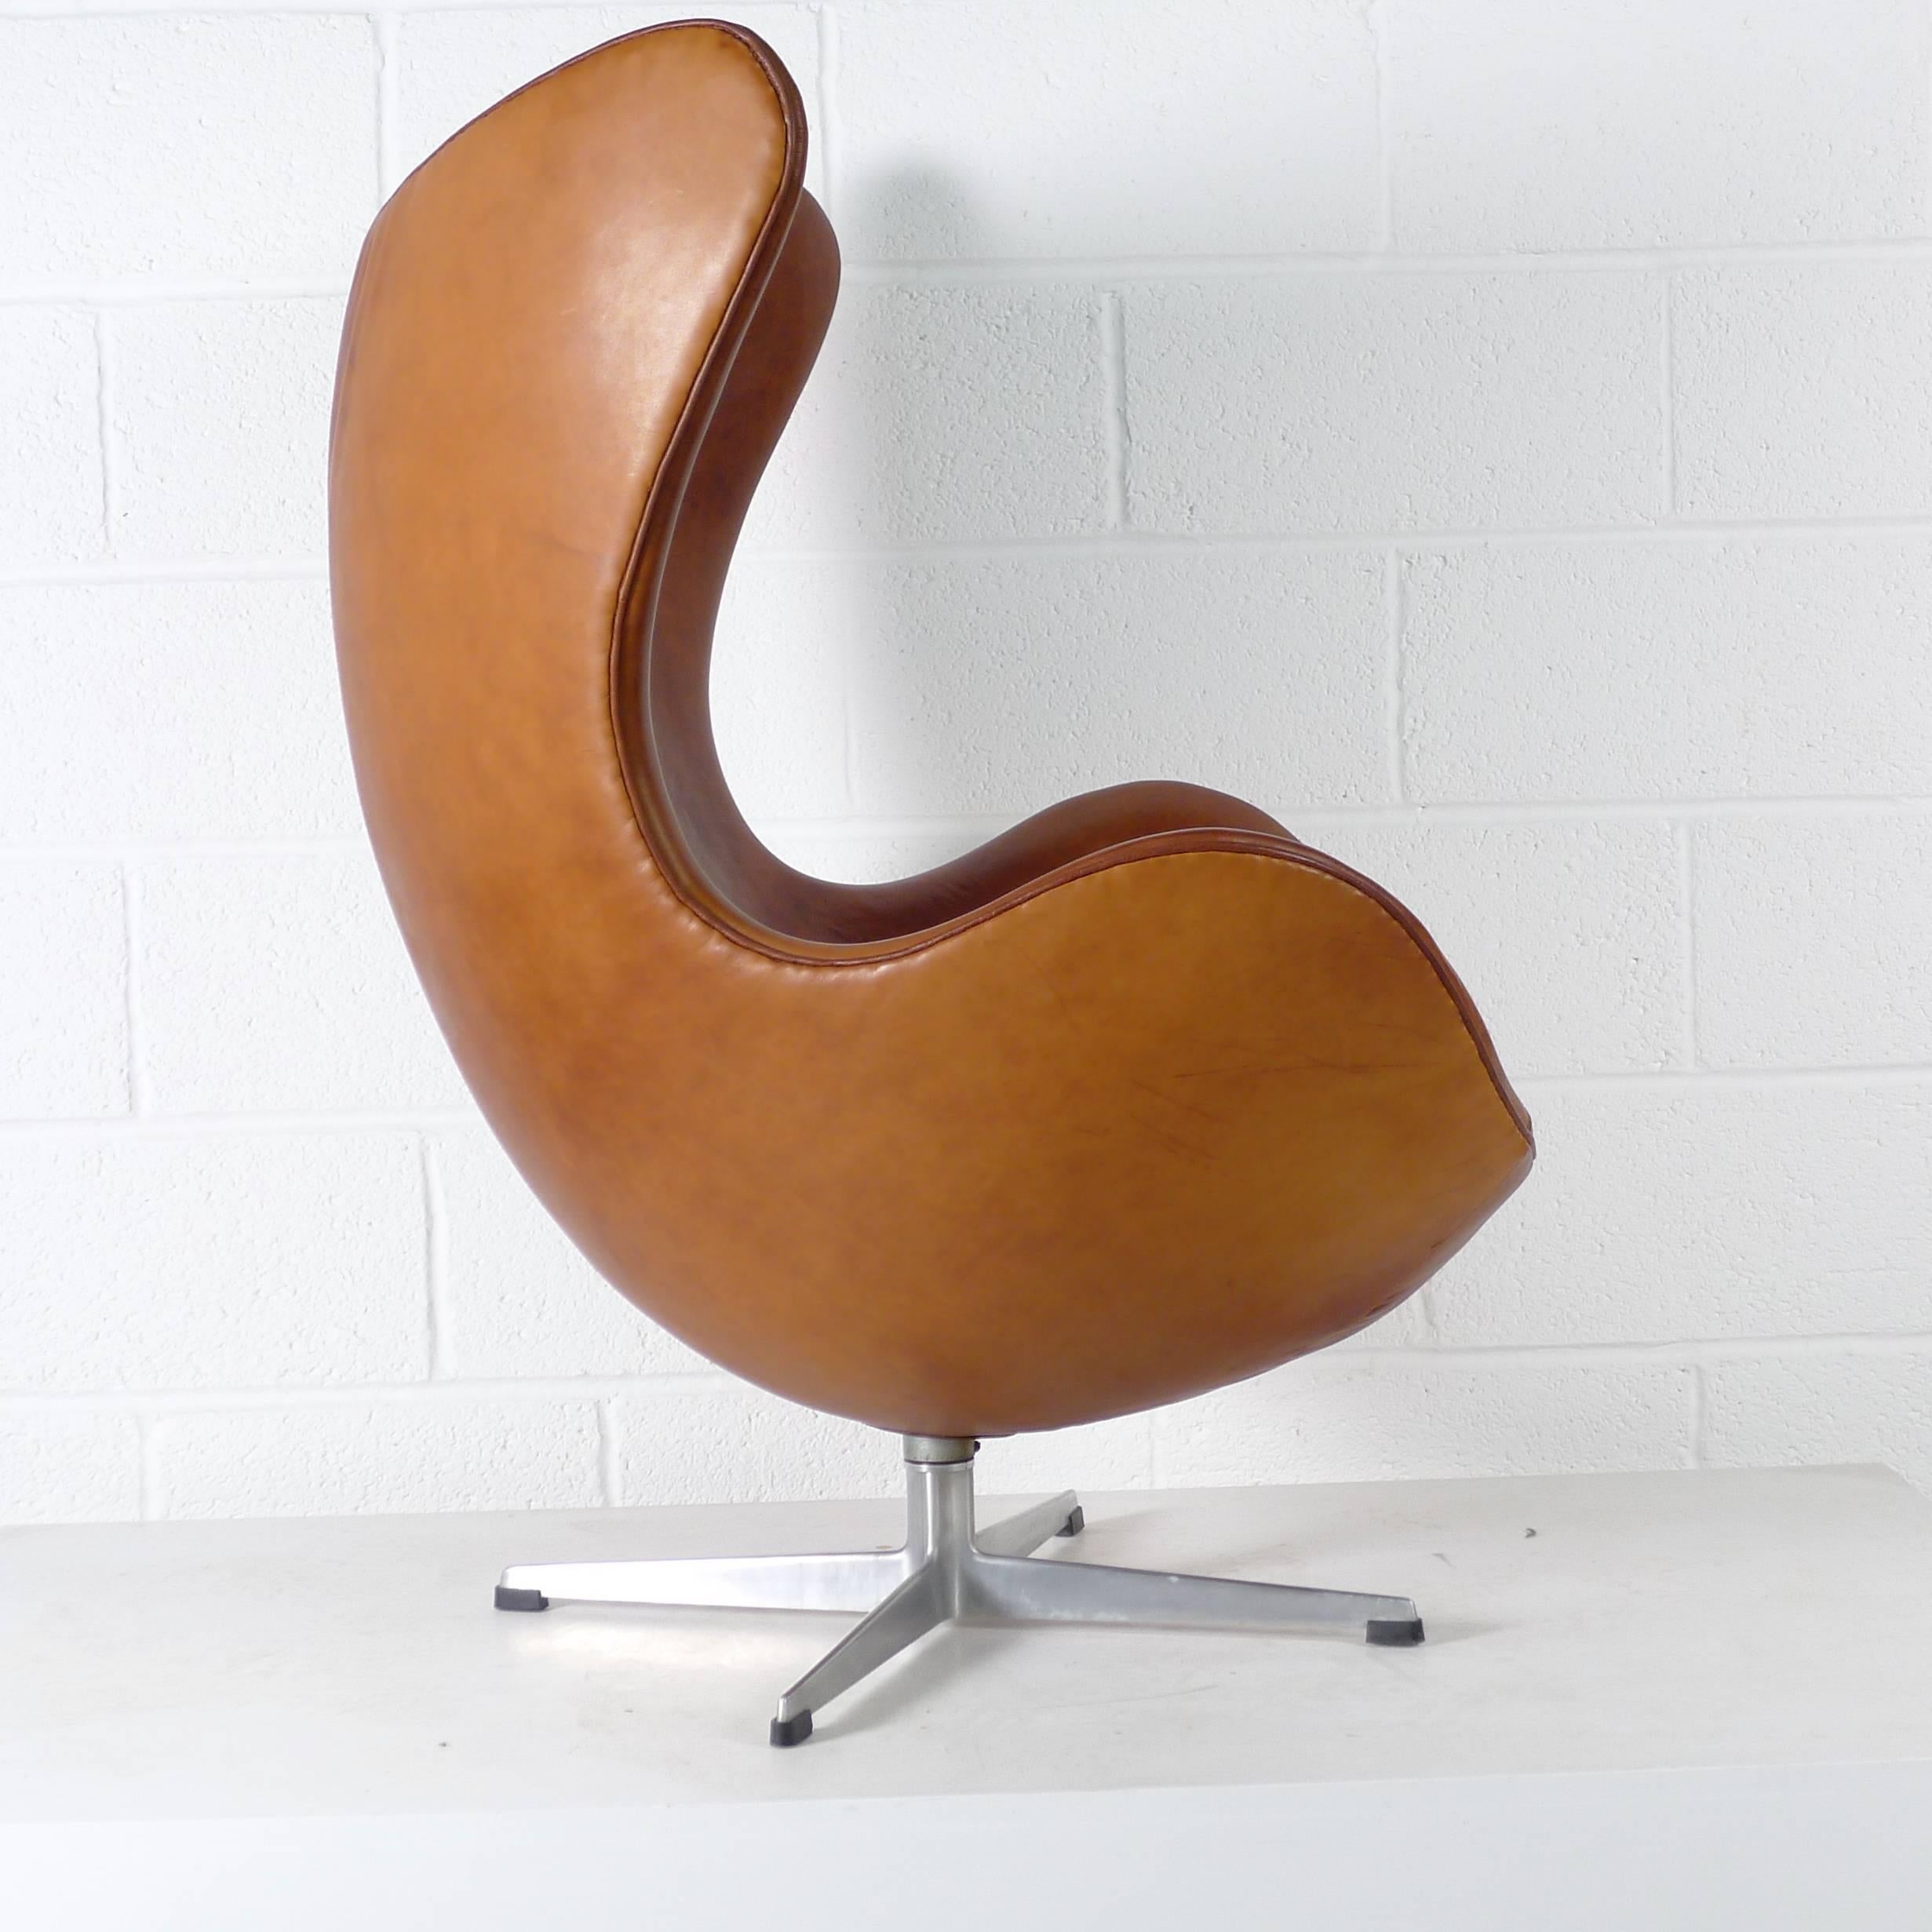 American Arne Jacobsen Egg Chair